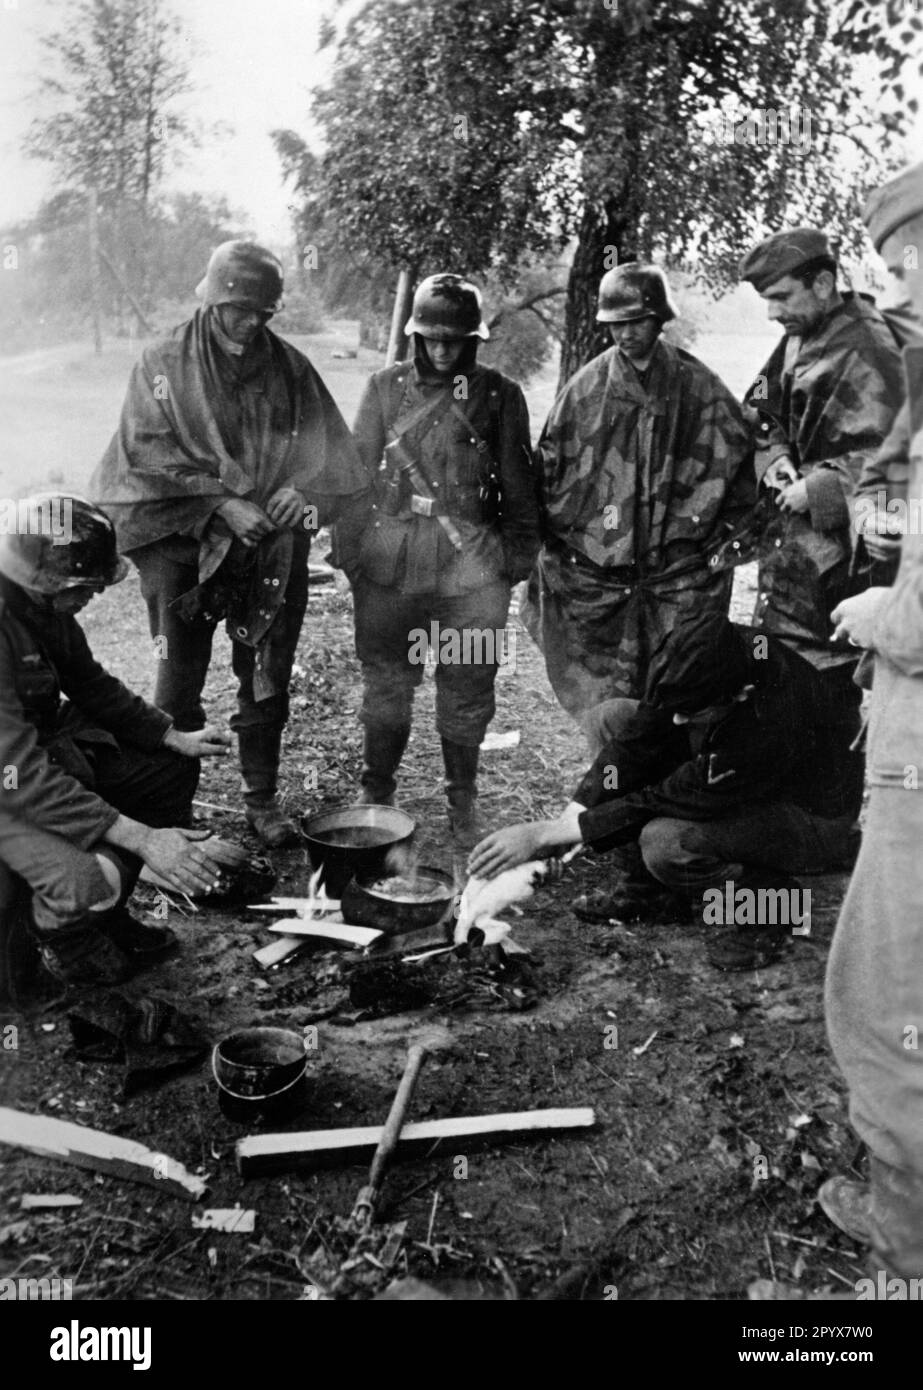 Al este de Gshatsk (al noreste de Smolensk), en la sección central del Frente Oriental, algunos soldados de infantería se reunieron alrededor de un fuego para calentarse y preparar alimentos. Foto: Böhmer [traducción automática] Foto de stock